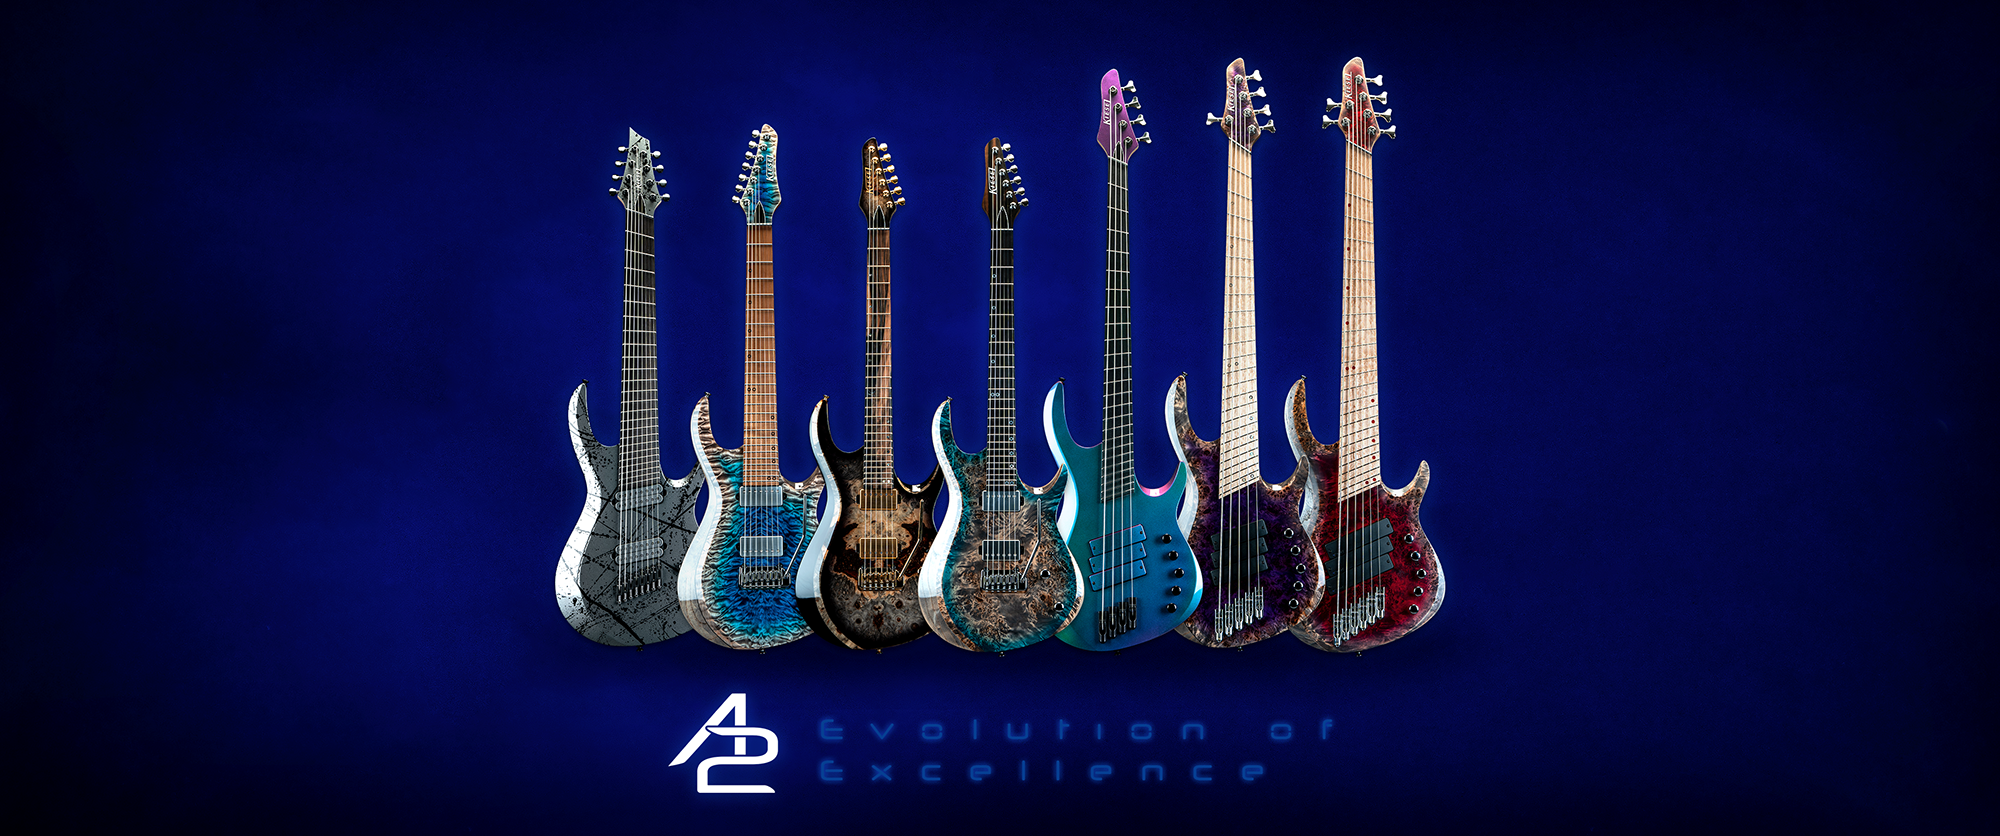 Kiesel Guitars A2 (Aries 2) announcement